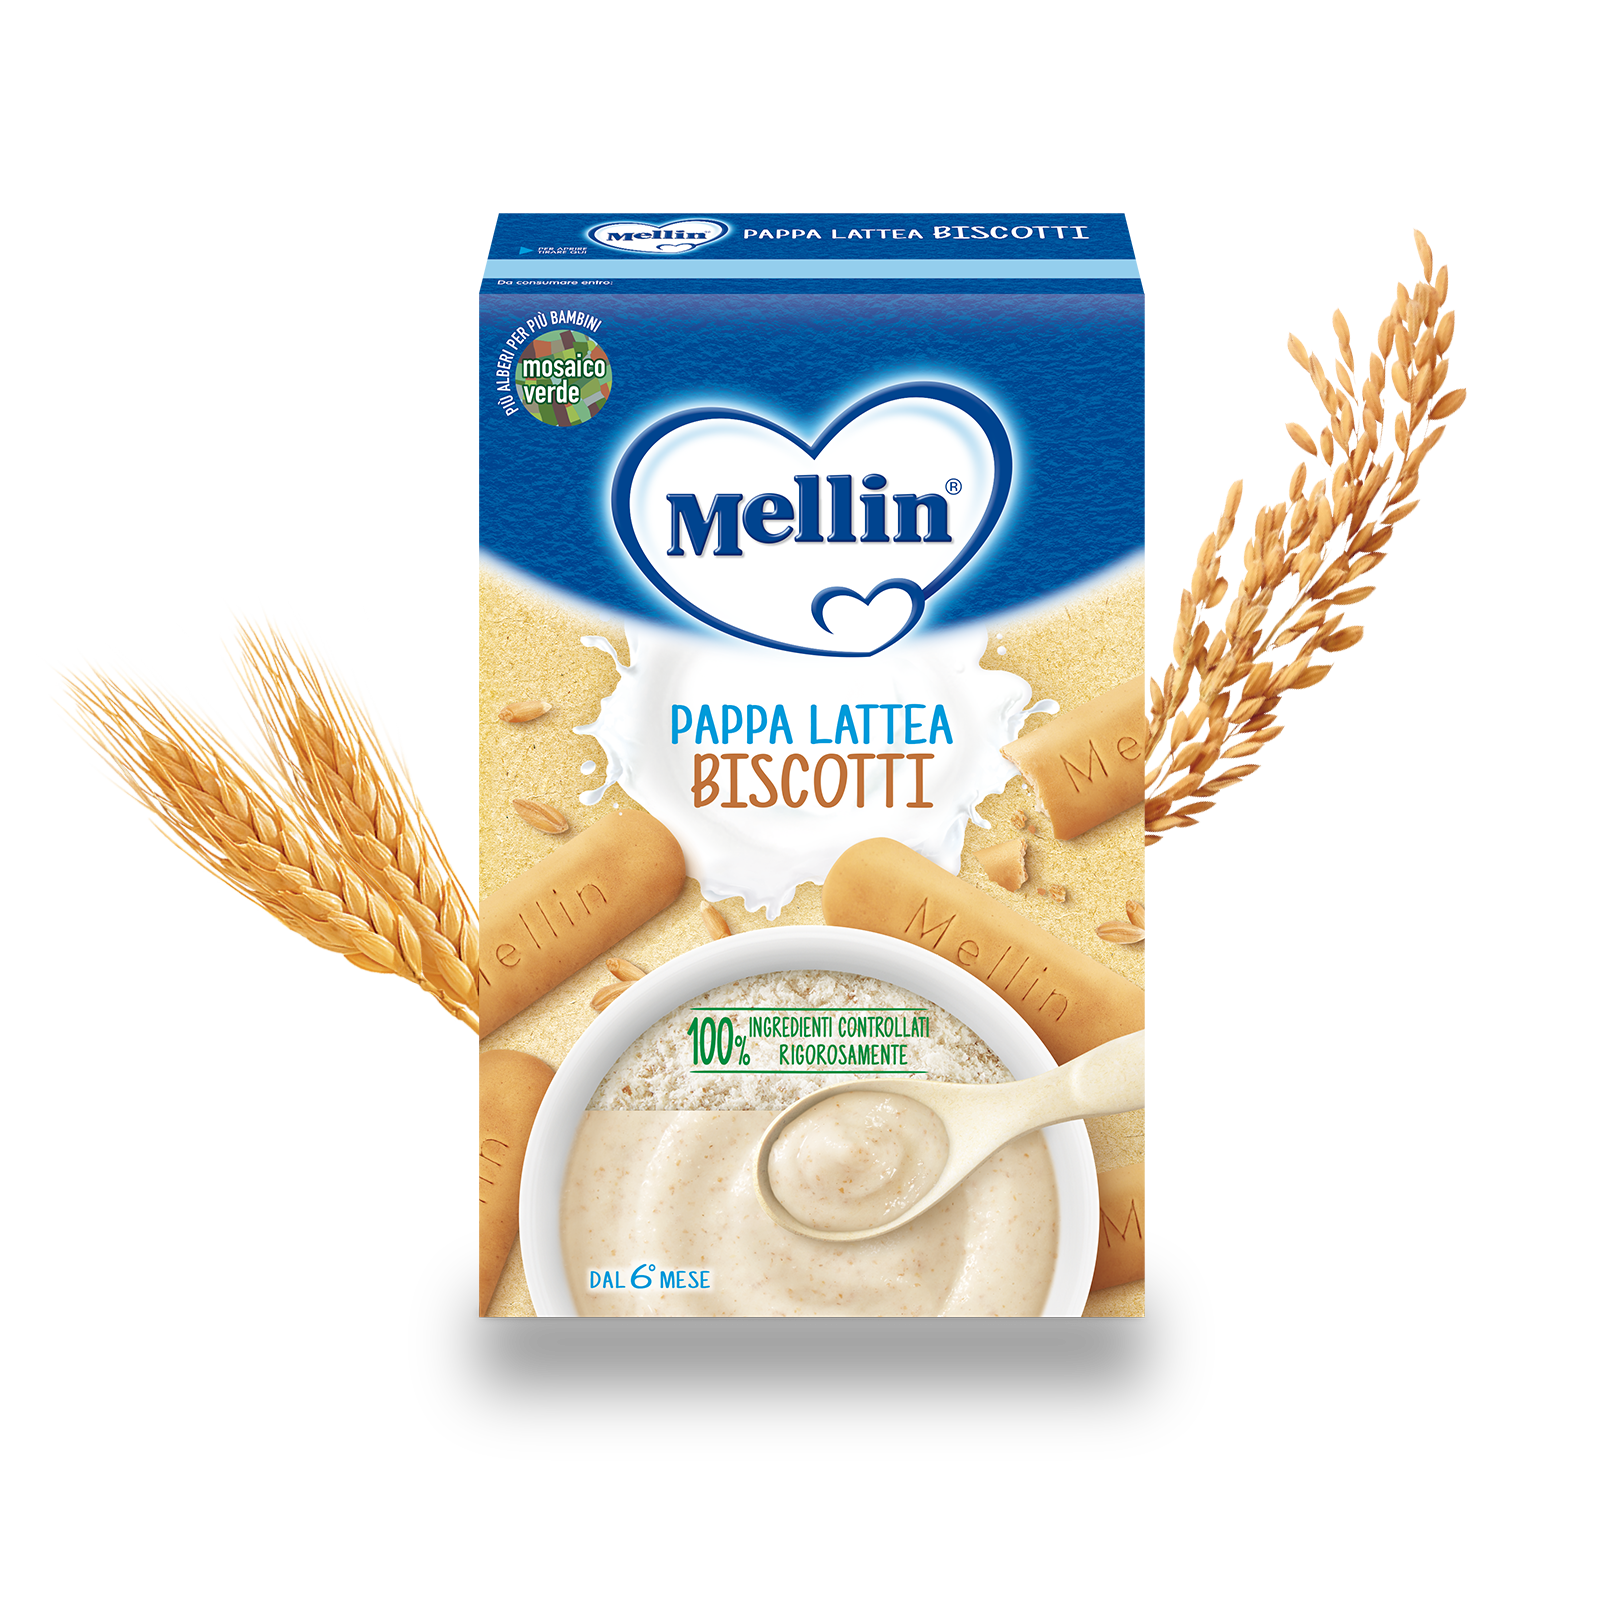 Pappa lattea biscotti Confezione da 250 g ℮ | Mellin